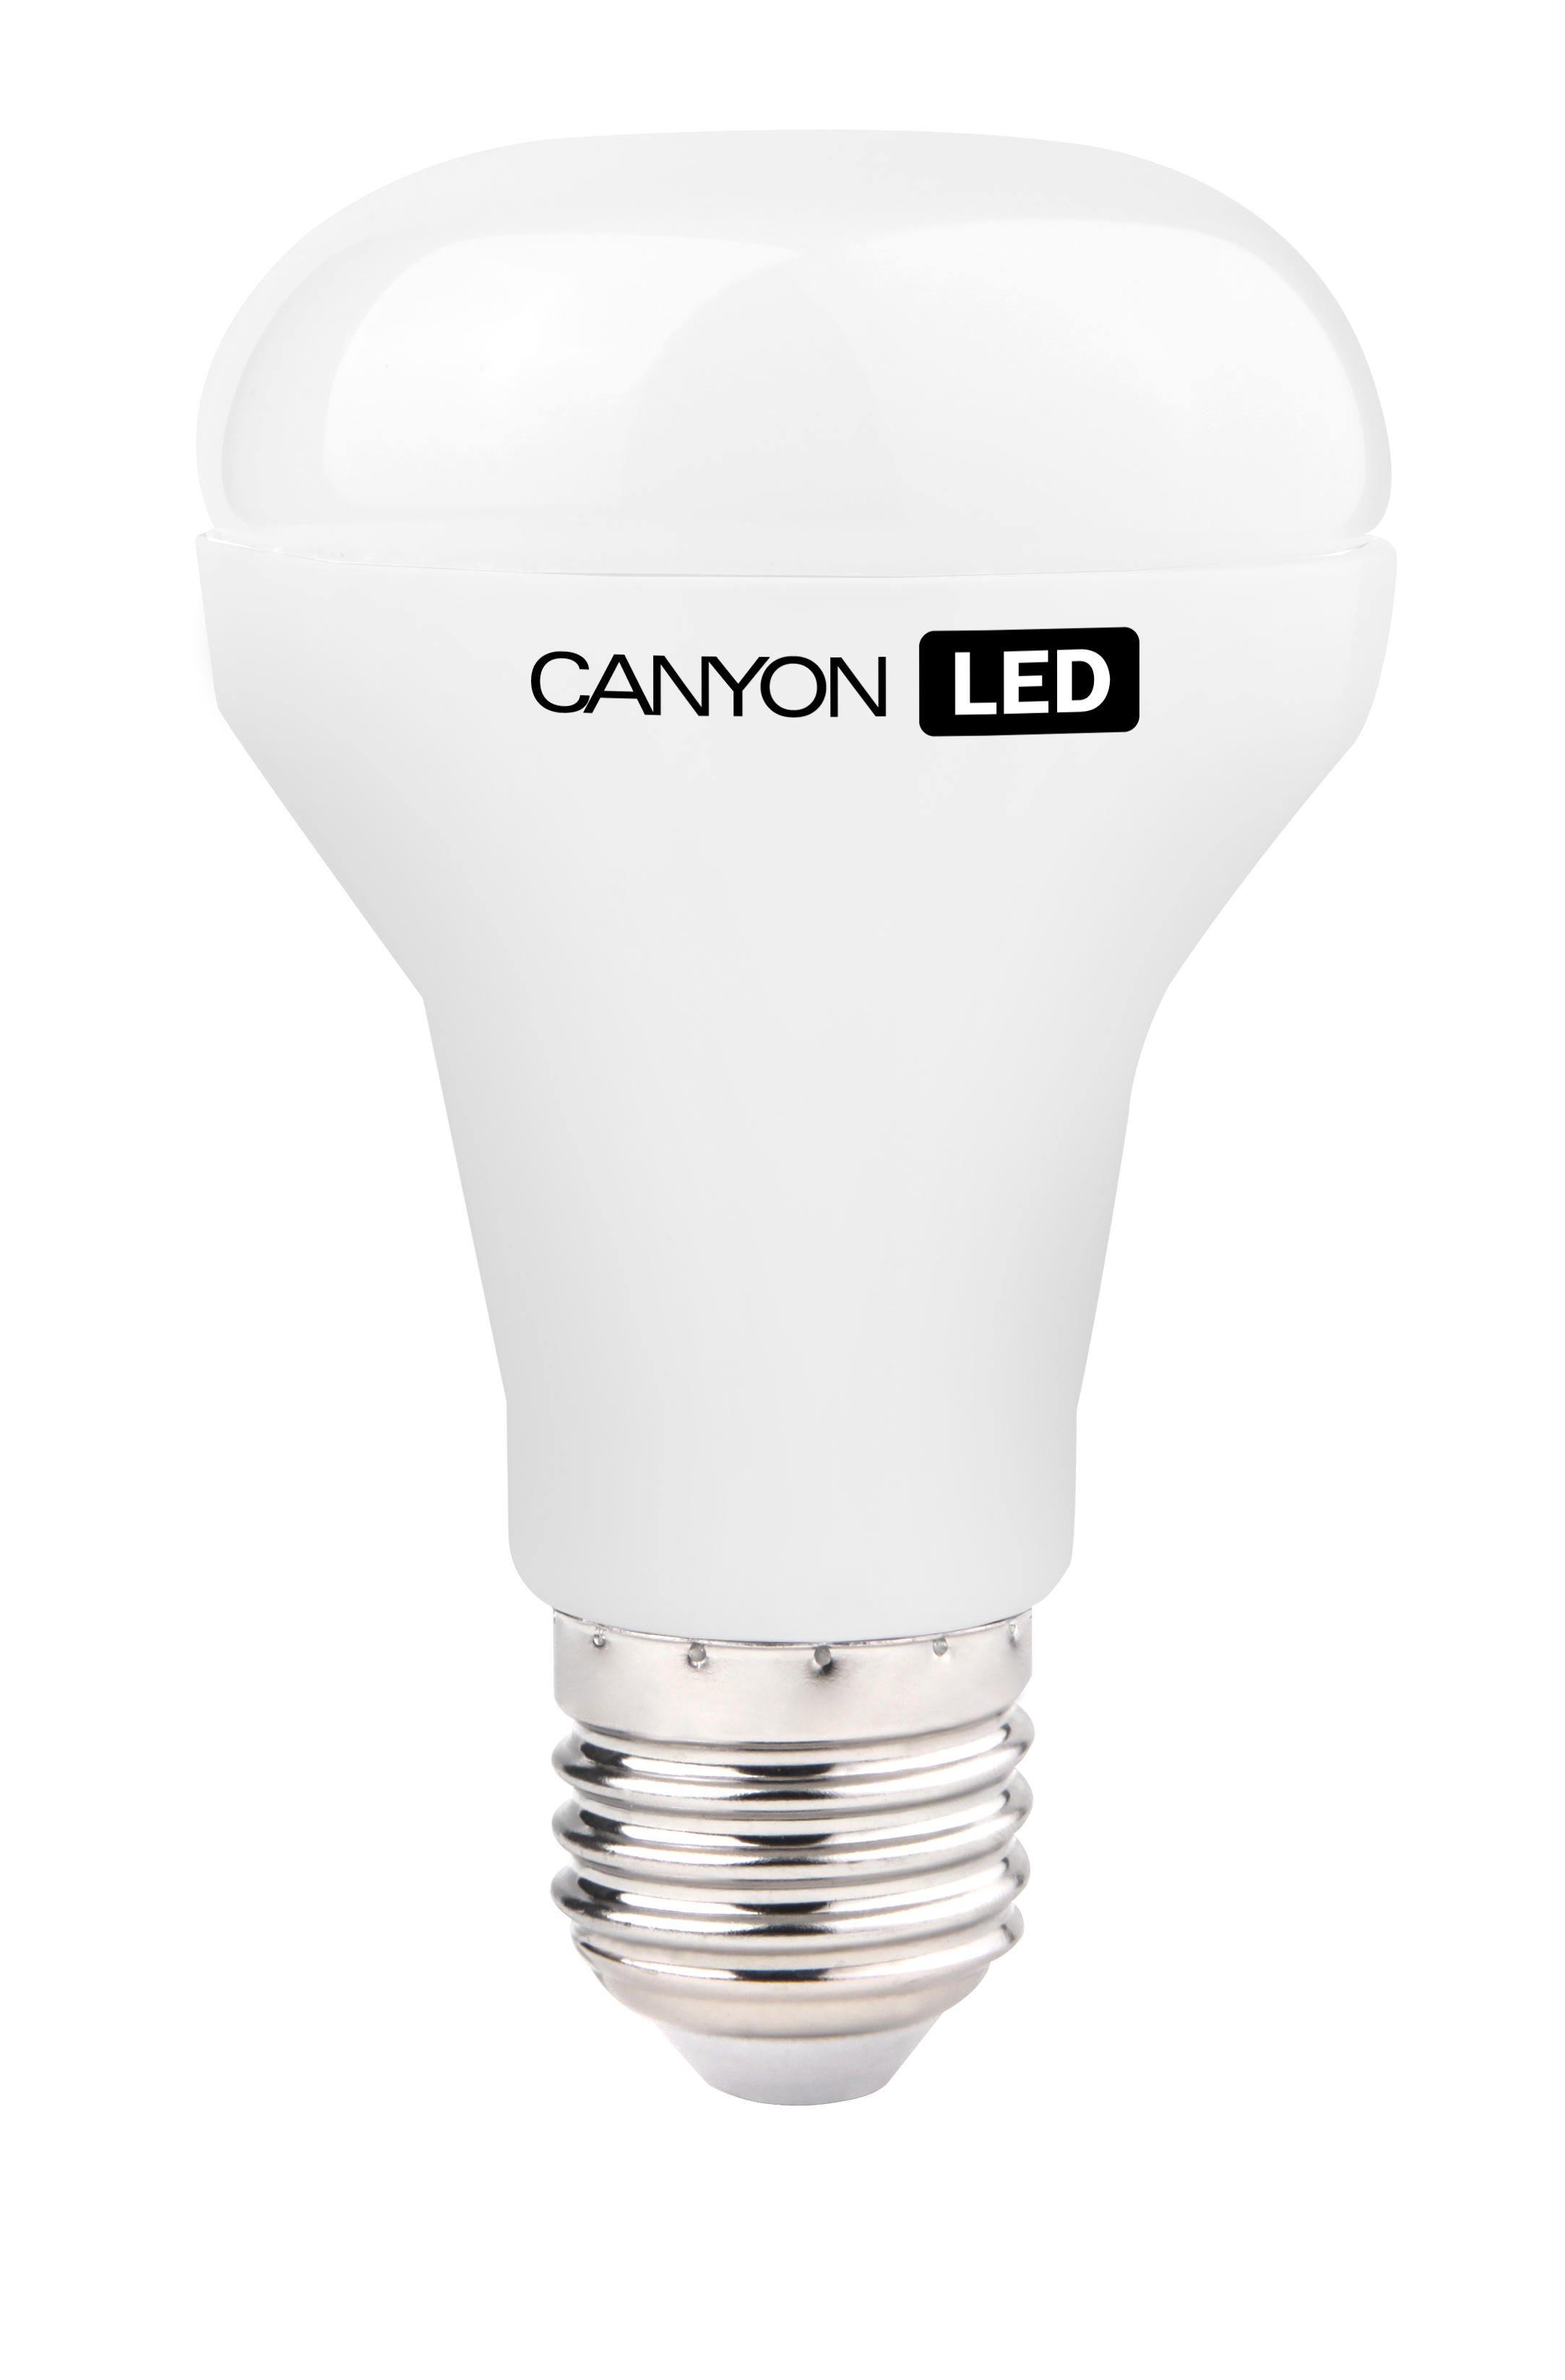 Canyon LED Lamp